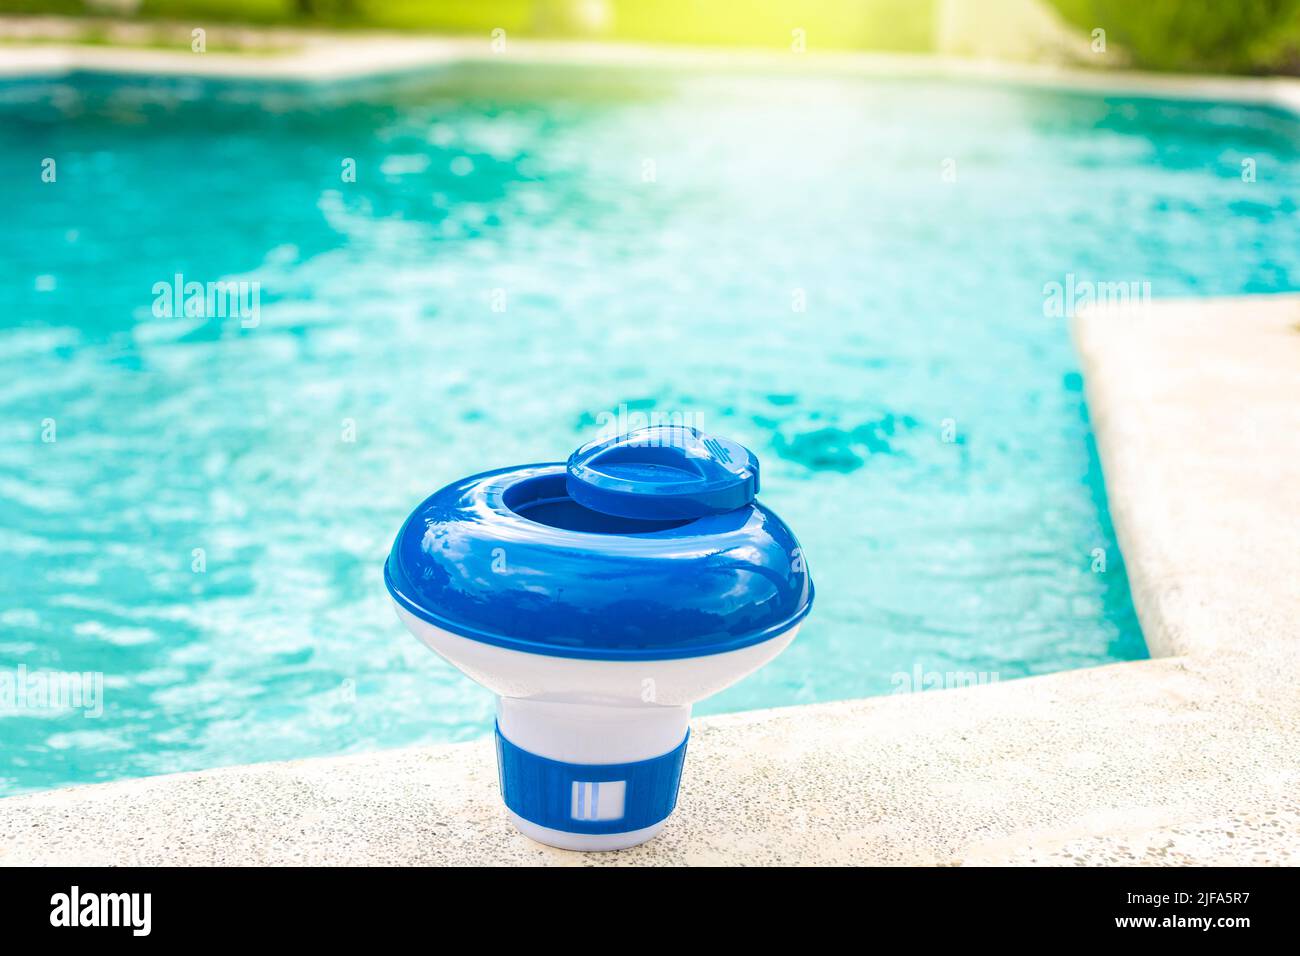 Ein Chlorspender für Schwimmbäder mit blauem Wasser im Hintergrund. Dosierschwimmbad zur Chlorierung von Schwimmbädern, Ein Chlorschwimmbad am Rand Stockfoto